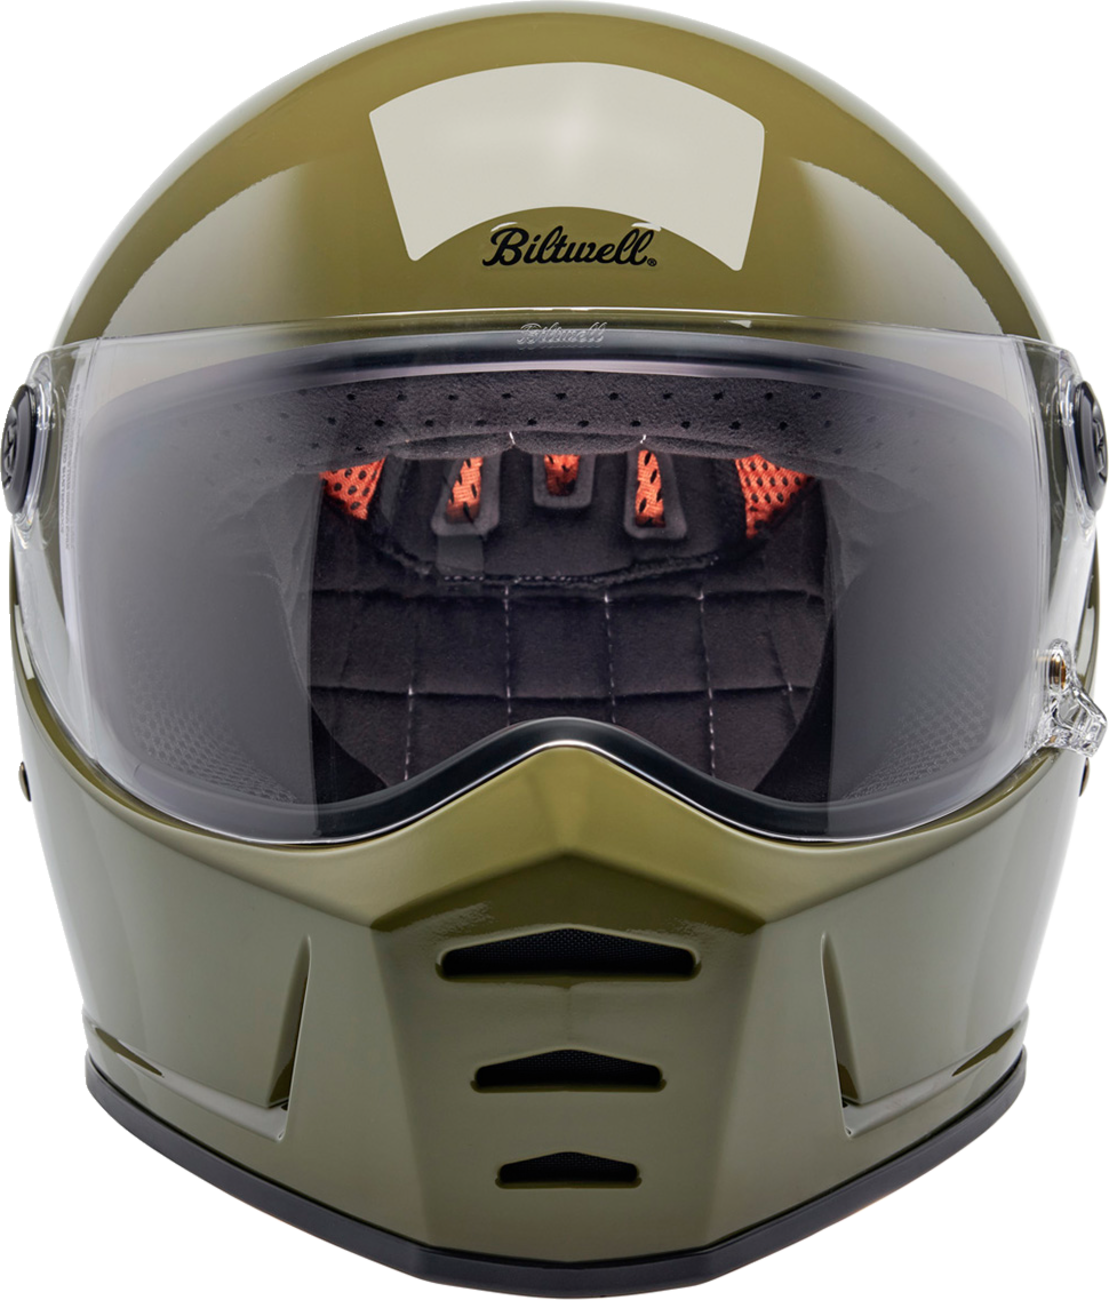 BILTWELL Lane Splitter Helmet - Gloss Olive Green - XS 1004-154-501